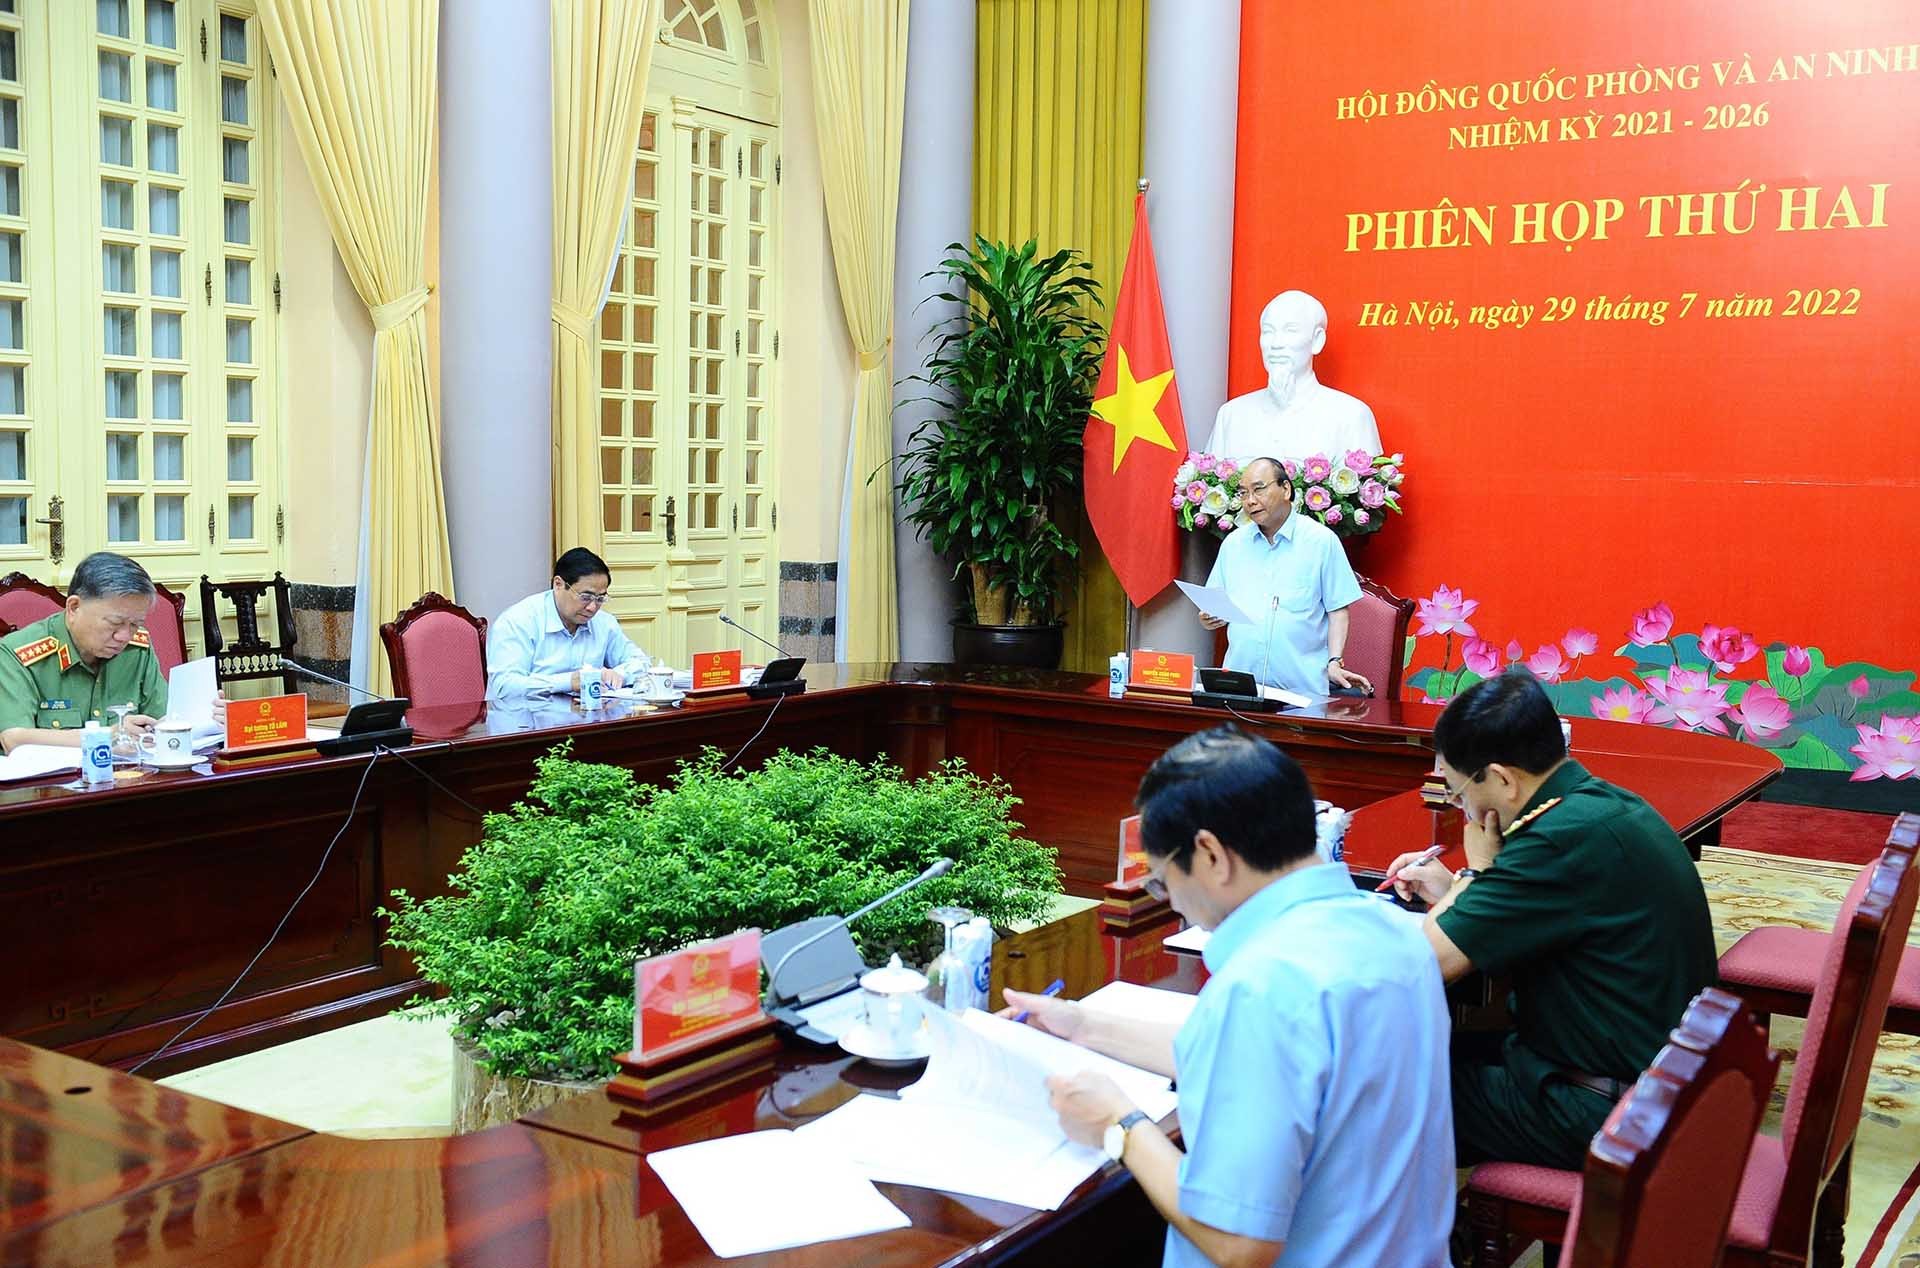 Chủ tịch nước Nguyễn Xuân Phúc, Chủ tịch Hội đồng Quốc phòng và An ninh đã chủ trì Phiên họp thứ hai Hội đồng Quốc phòng và An ninh nhiệm kỳ 2021-2026. (Nguồn: TTXVN)